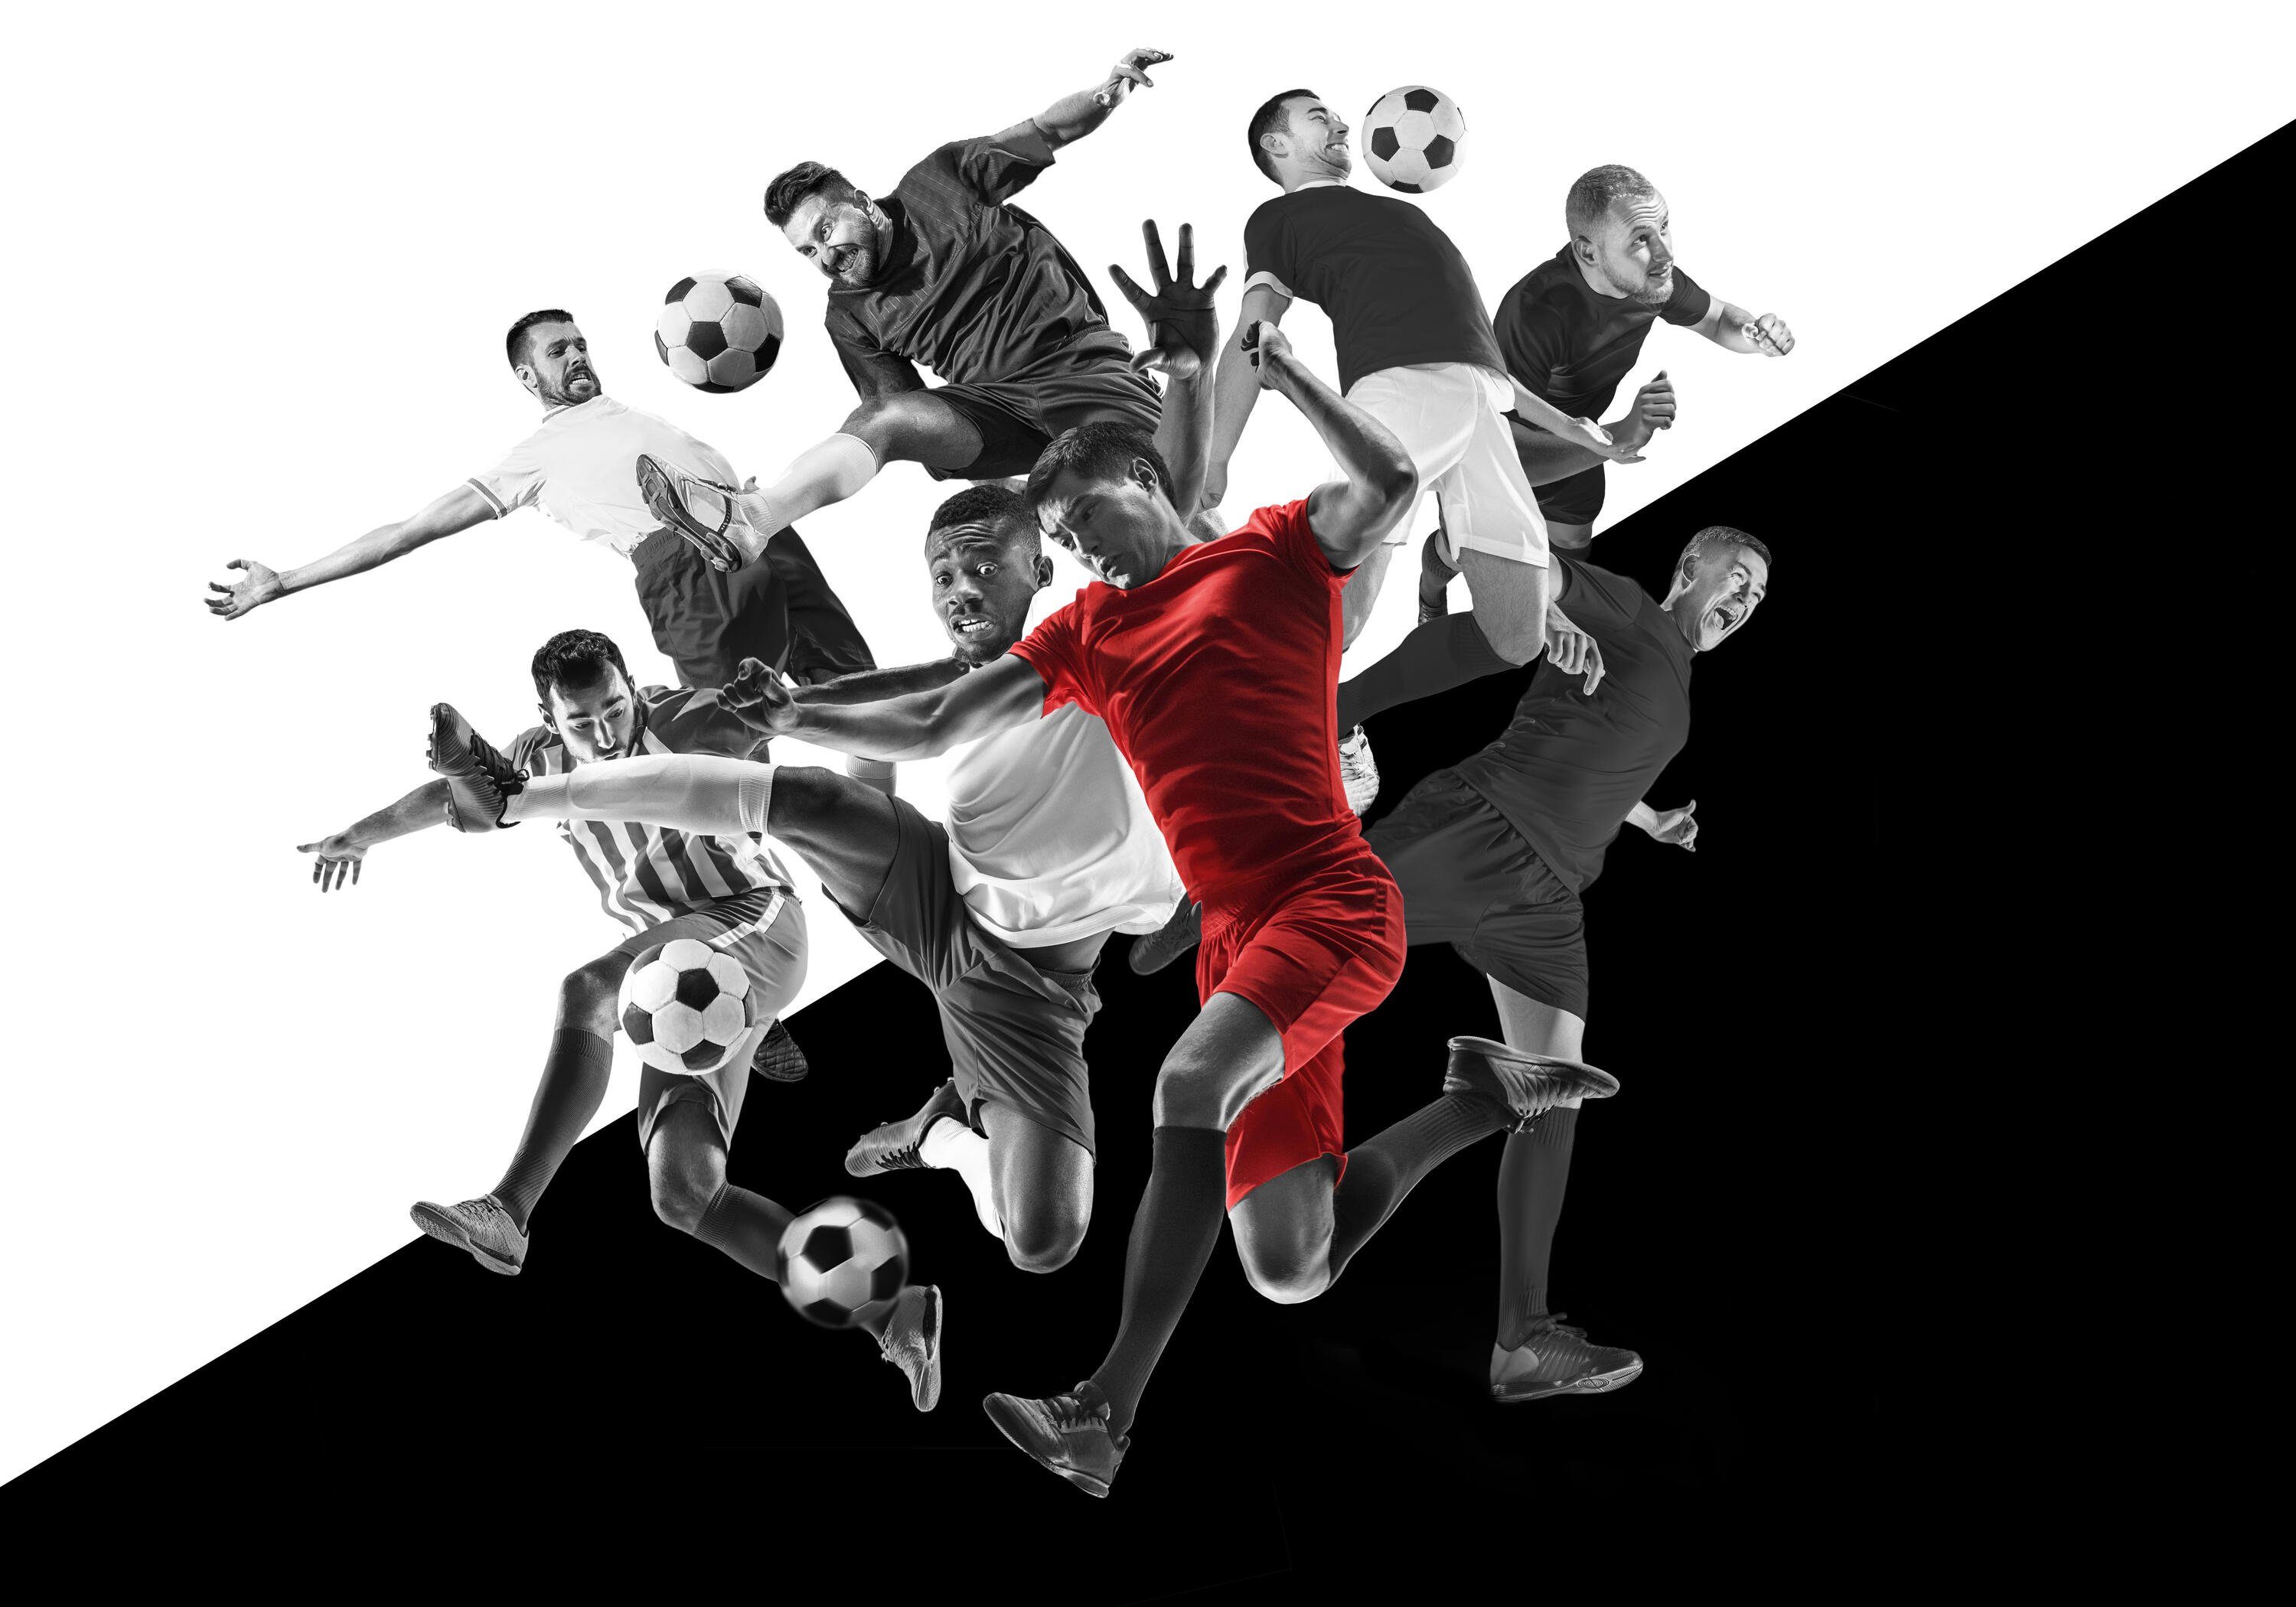 wandmotiv24 Fototapete Fußballspieler in Schwarz Weiß und Rot, glatt, Wandtapete, Motivtapete, matt, Vliestapete